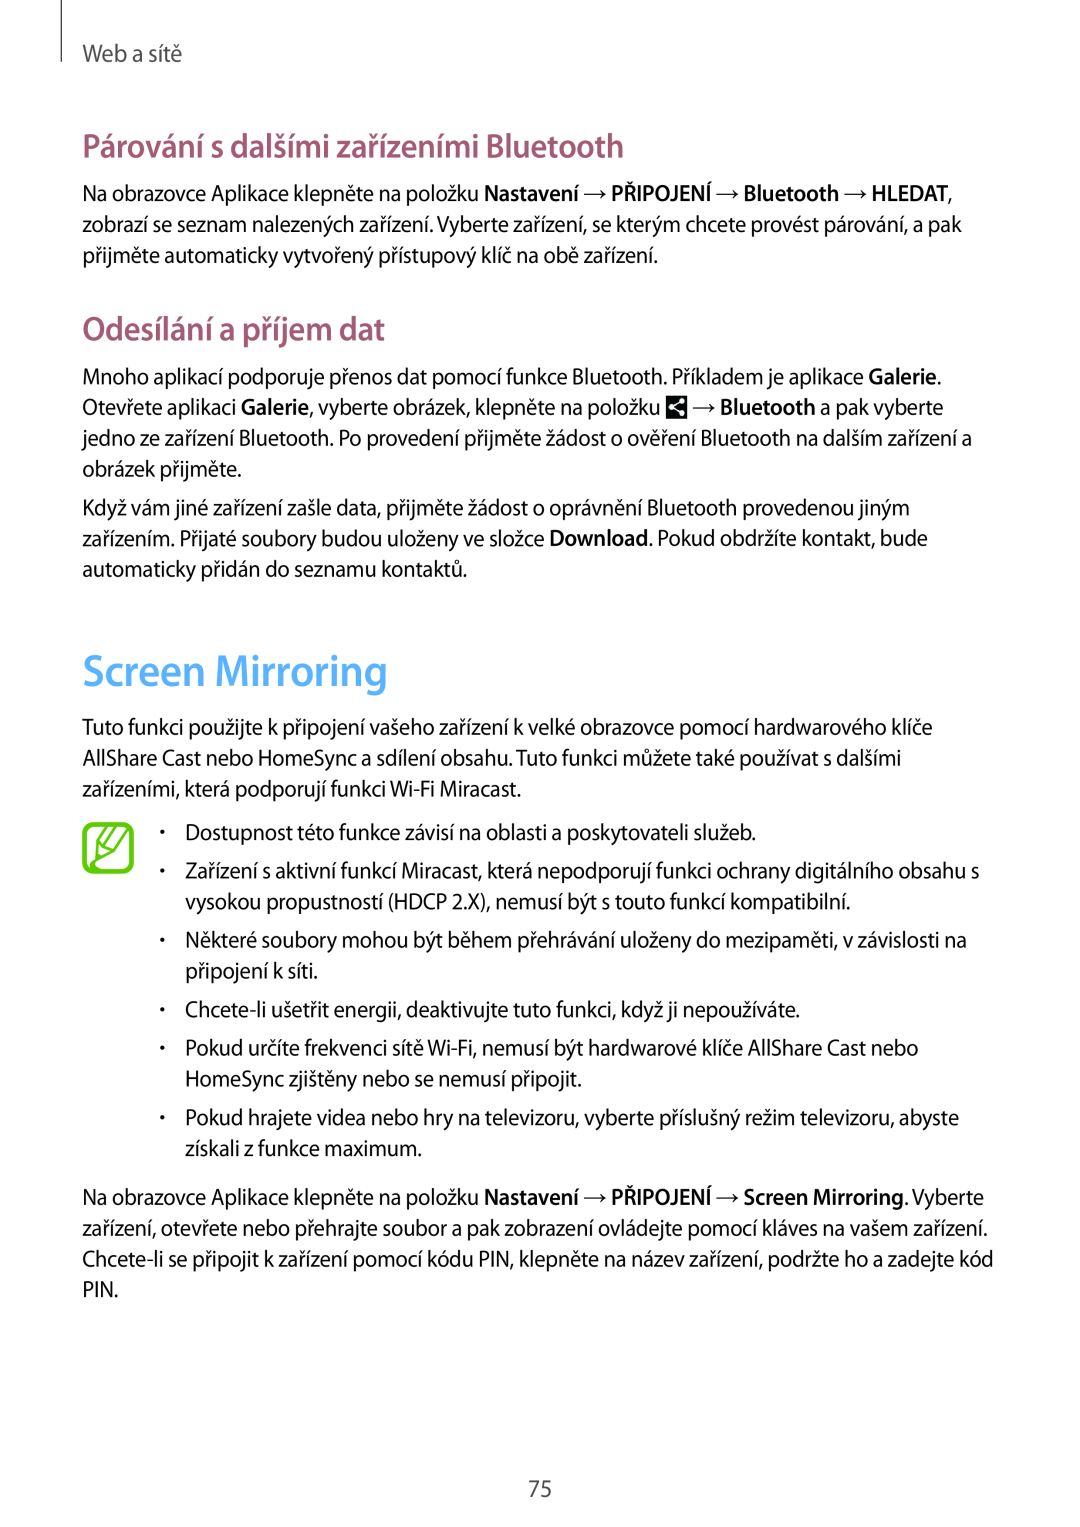 Samsung SM-P9050ZKAAUT manual Screen Mirroring, Párování s dalšími zařízeními Bluetooth, Odesílání a příjem dat, Web a sítě 